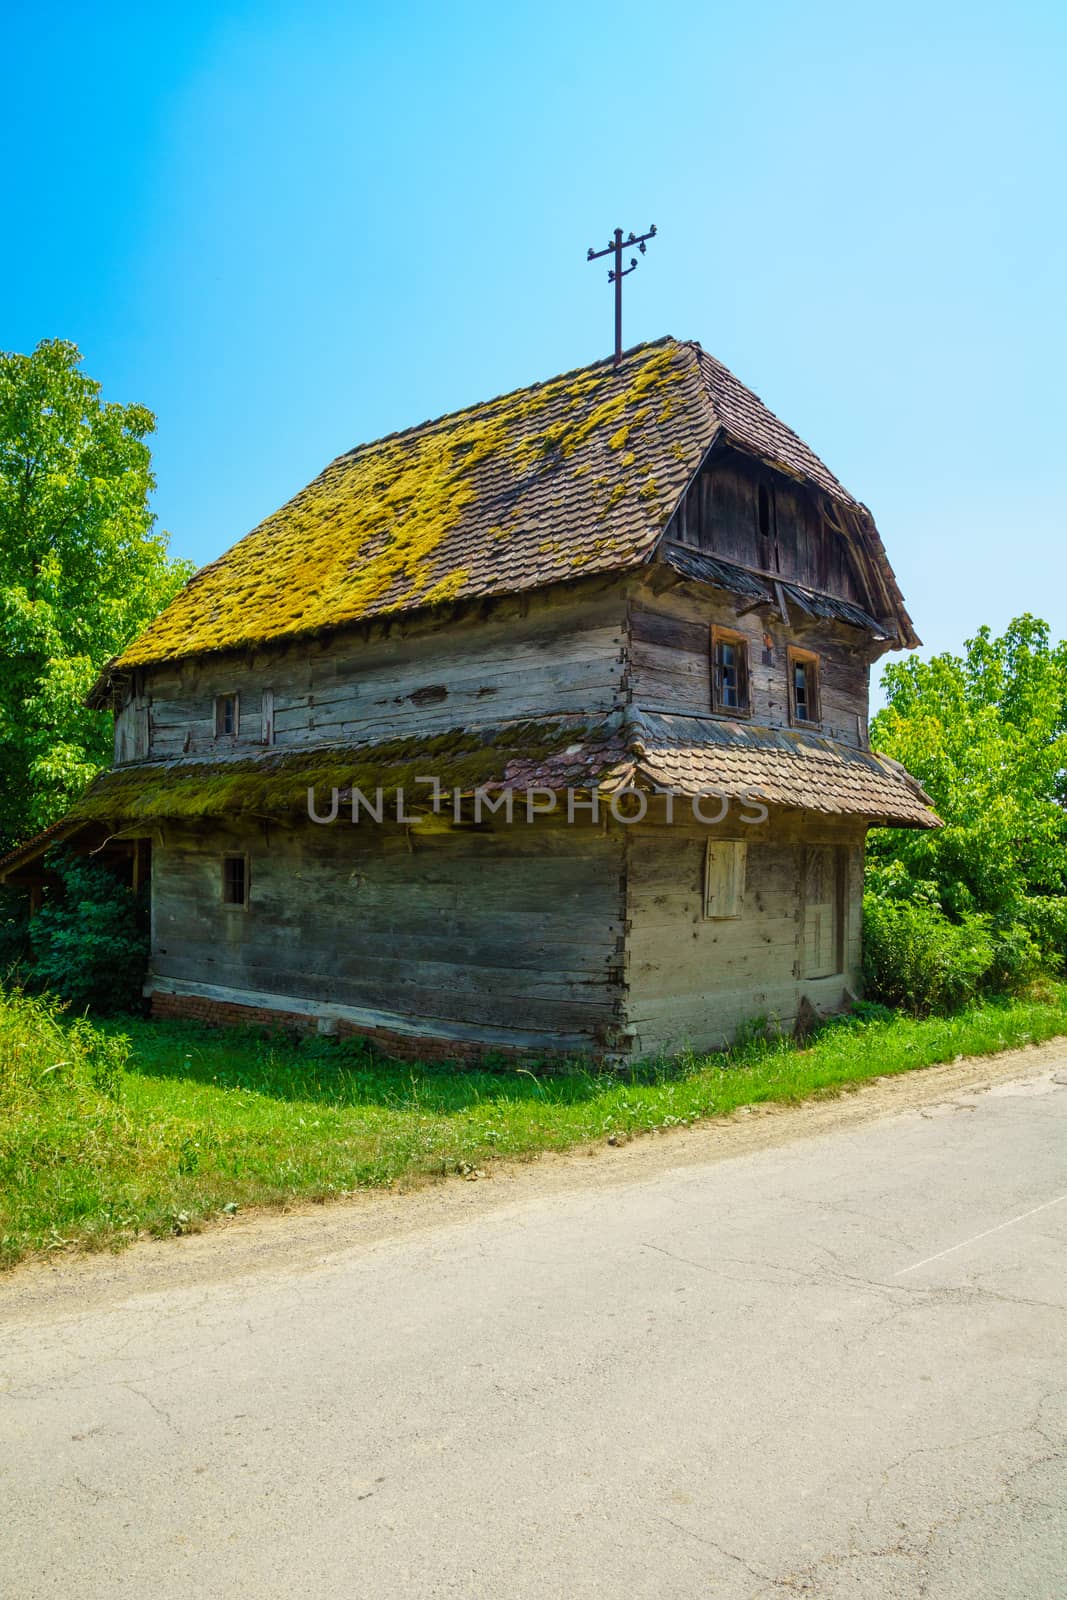 Typical wooden house in the village Krapje, Lonjsko Polje area, Croatia